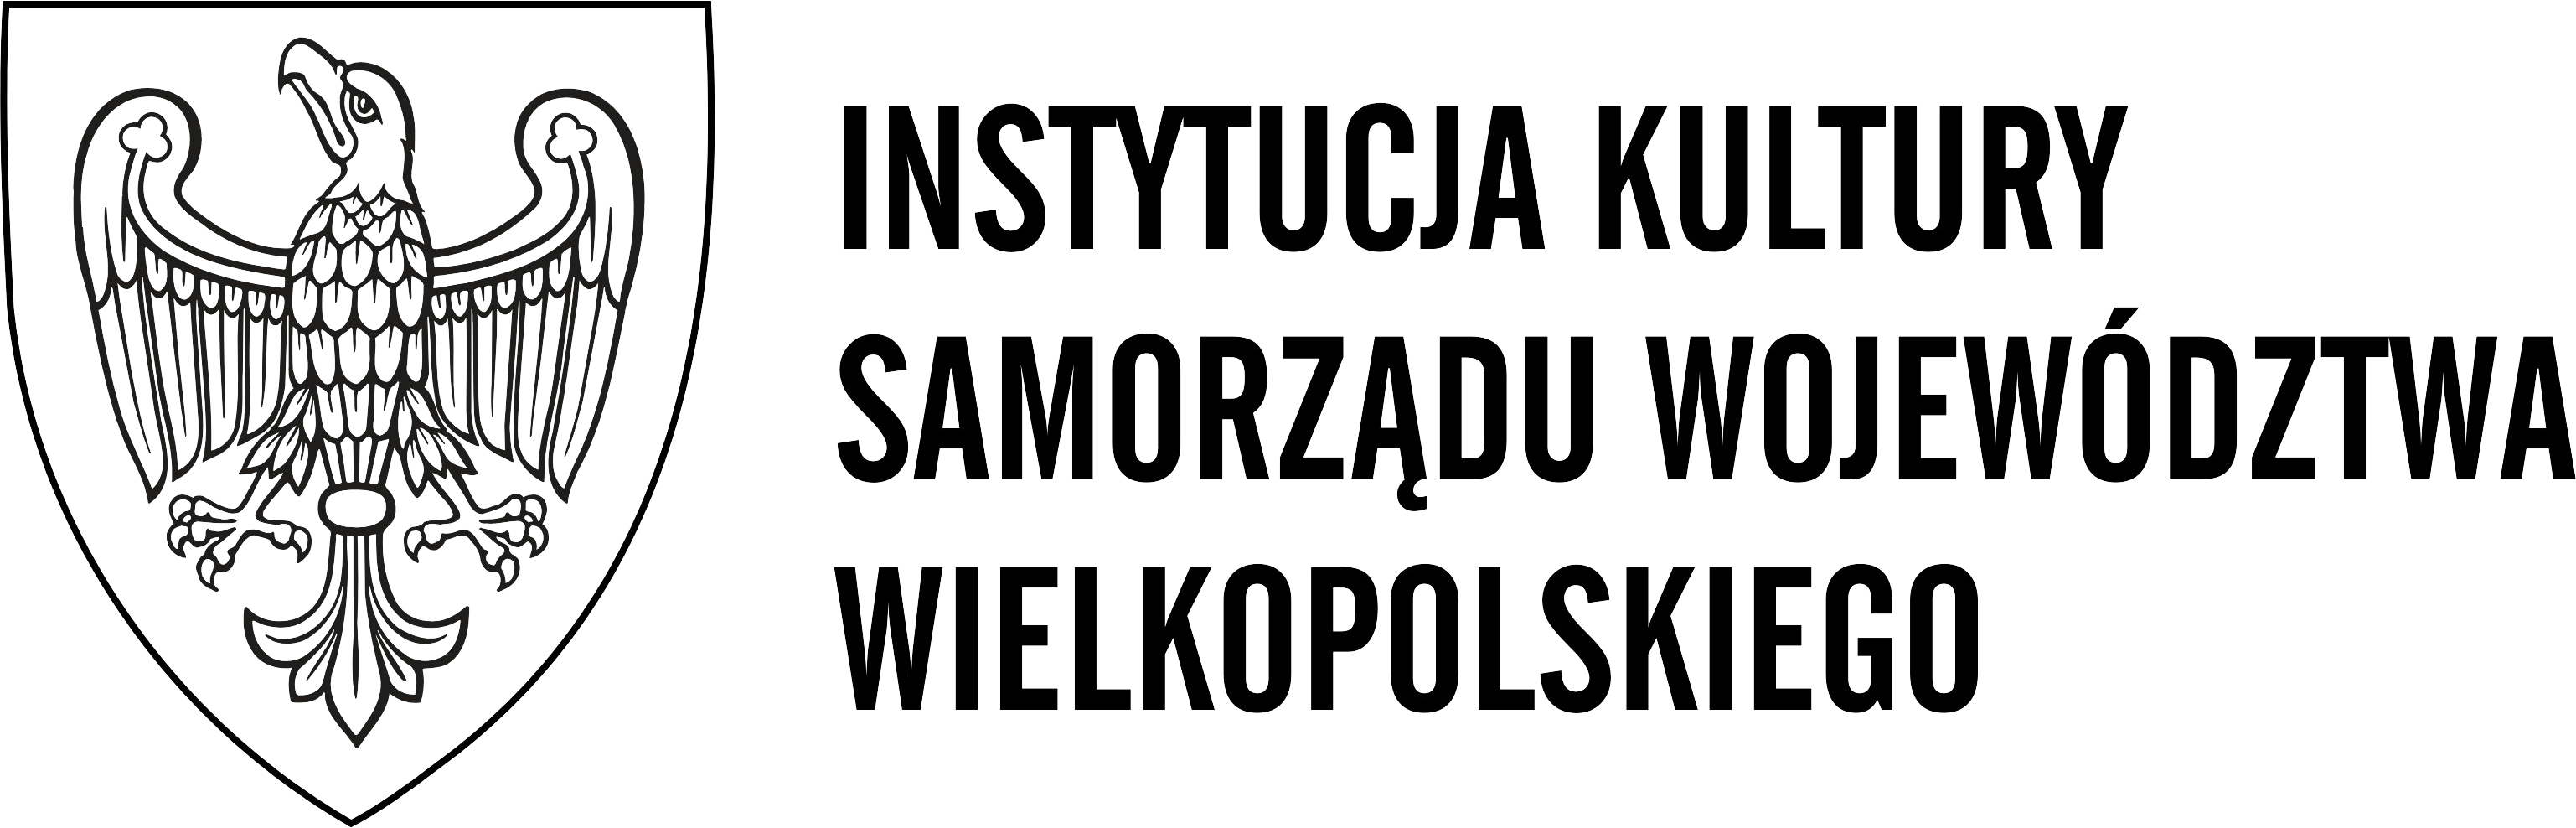 logo samorzad wojewodztwa wielkopolskiego